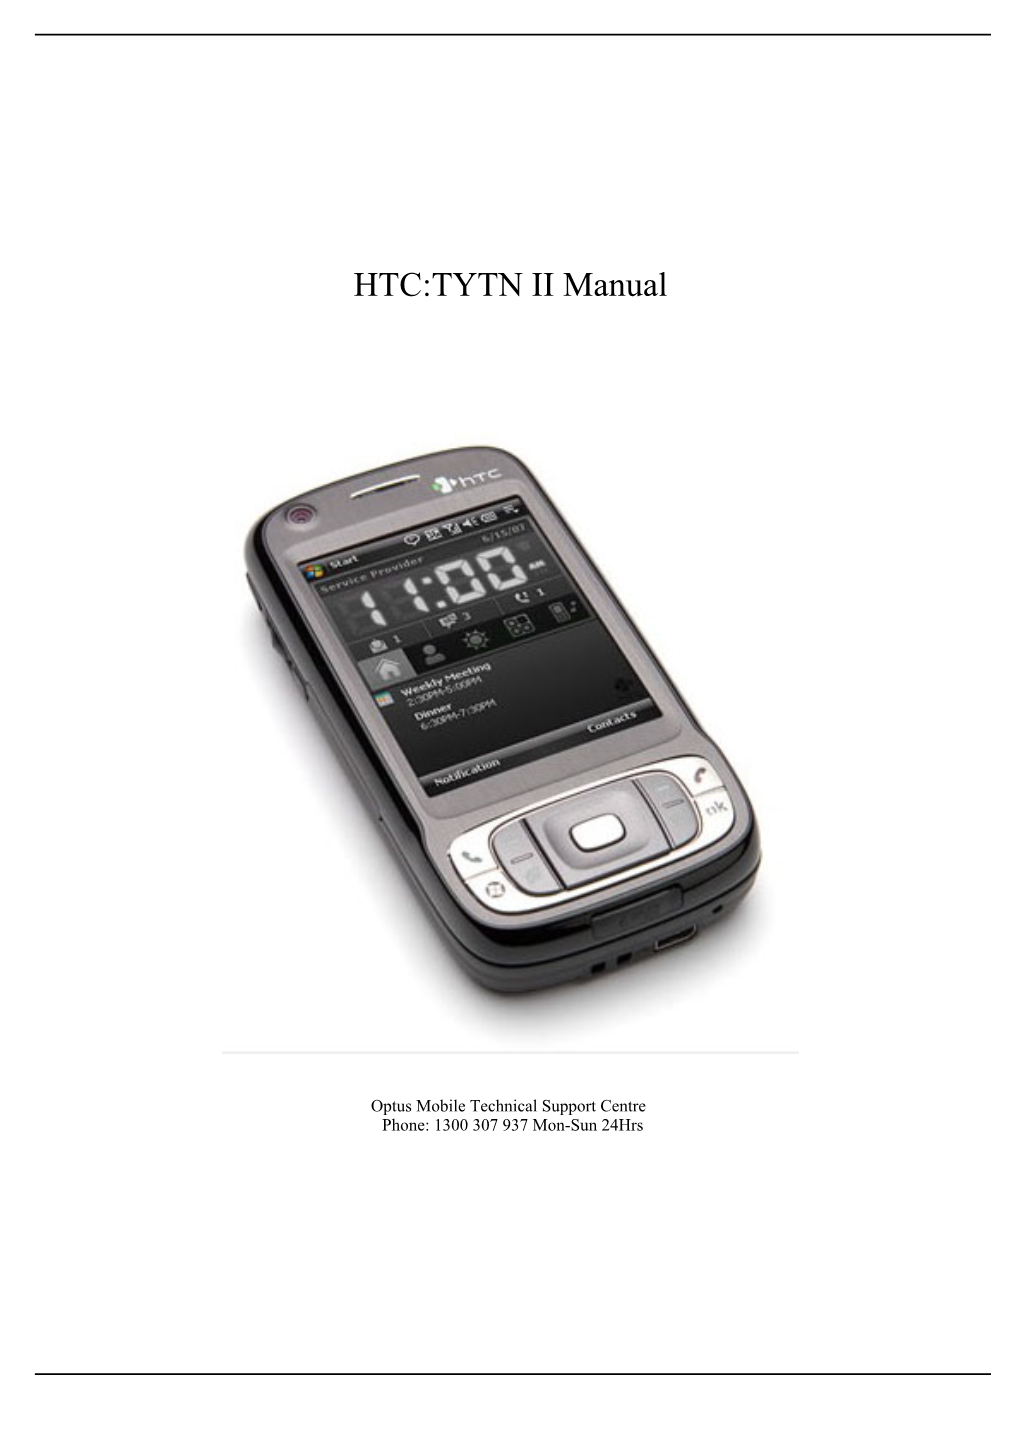 HTC:TYTN II Manual